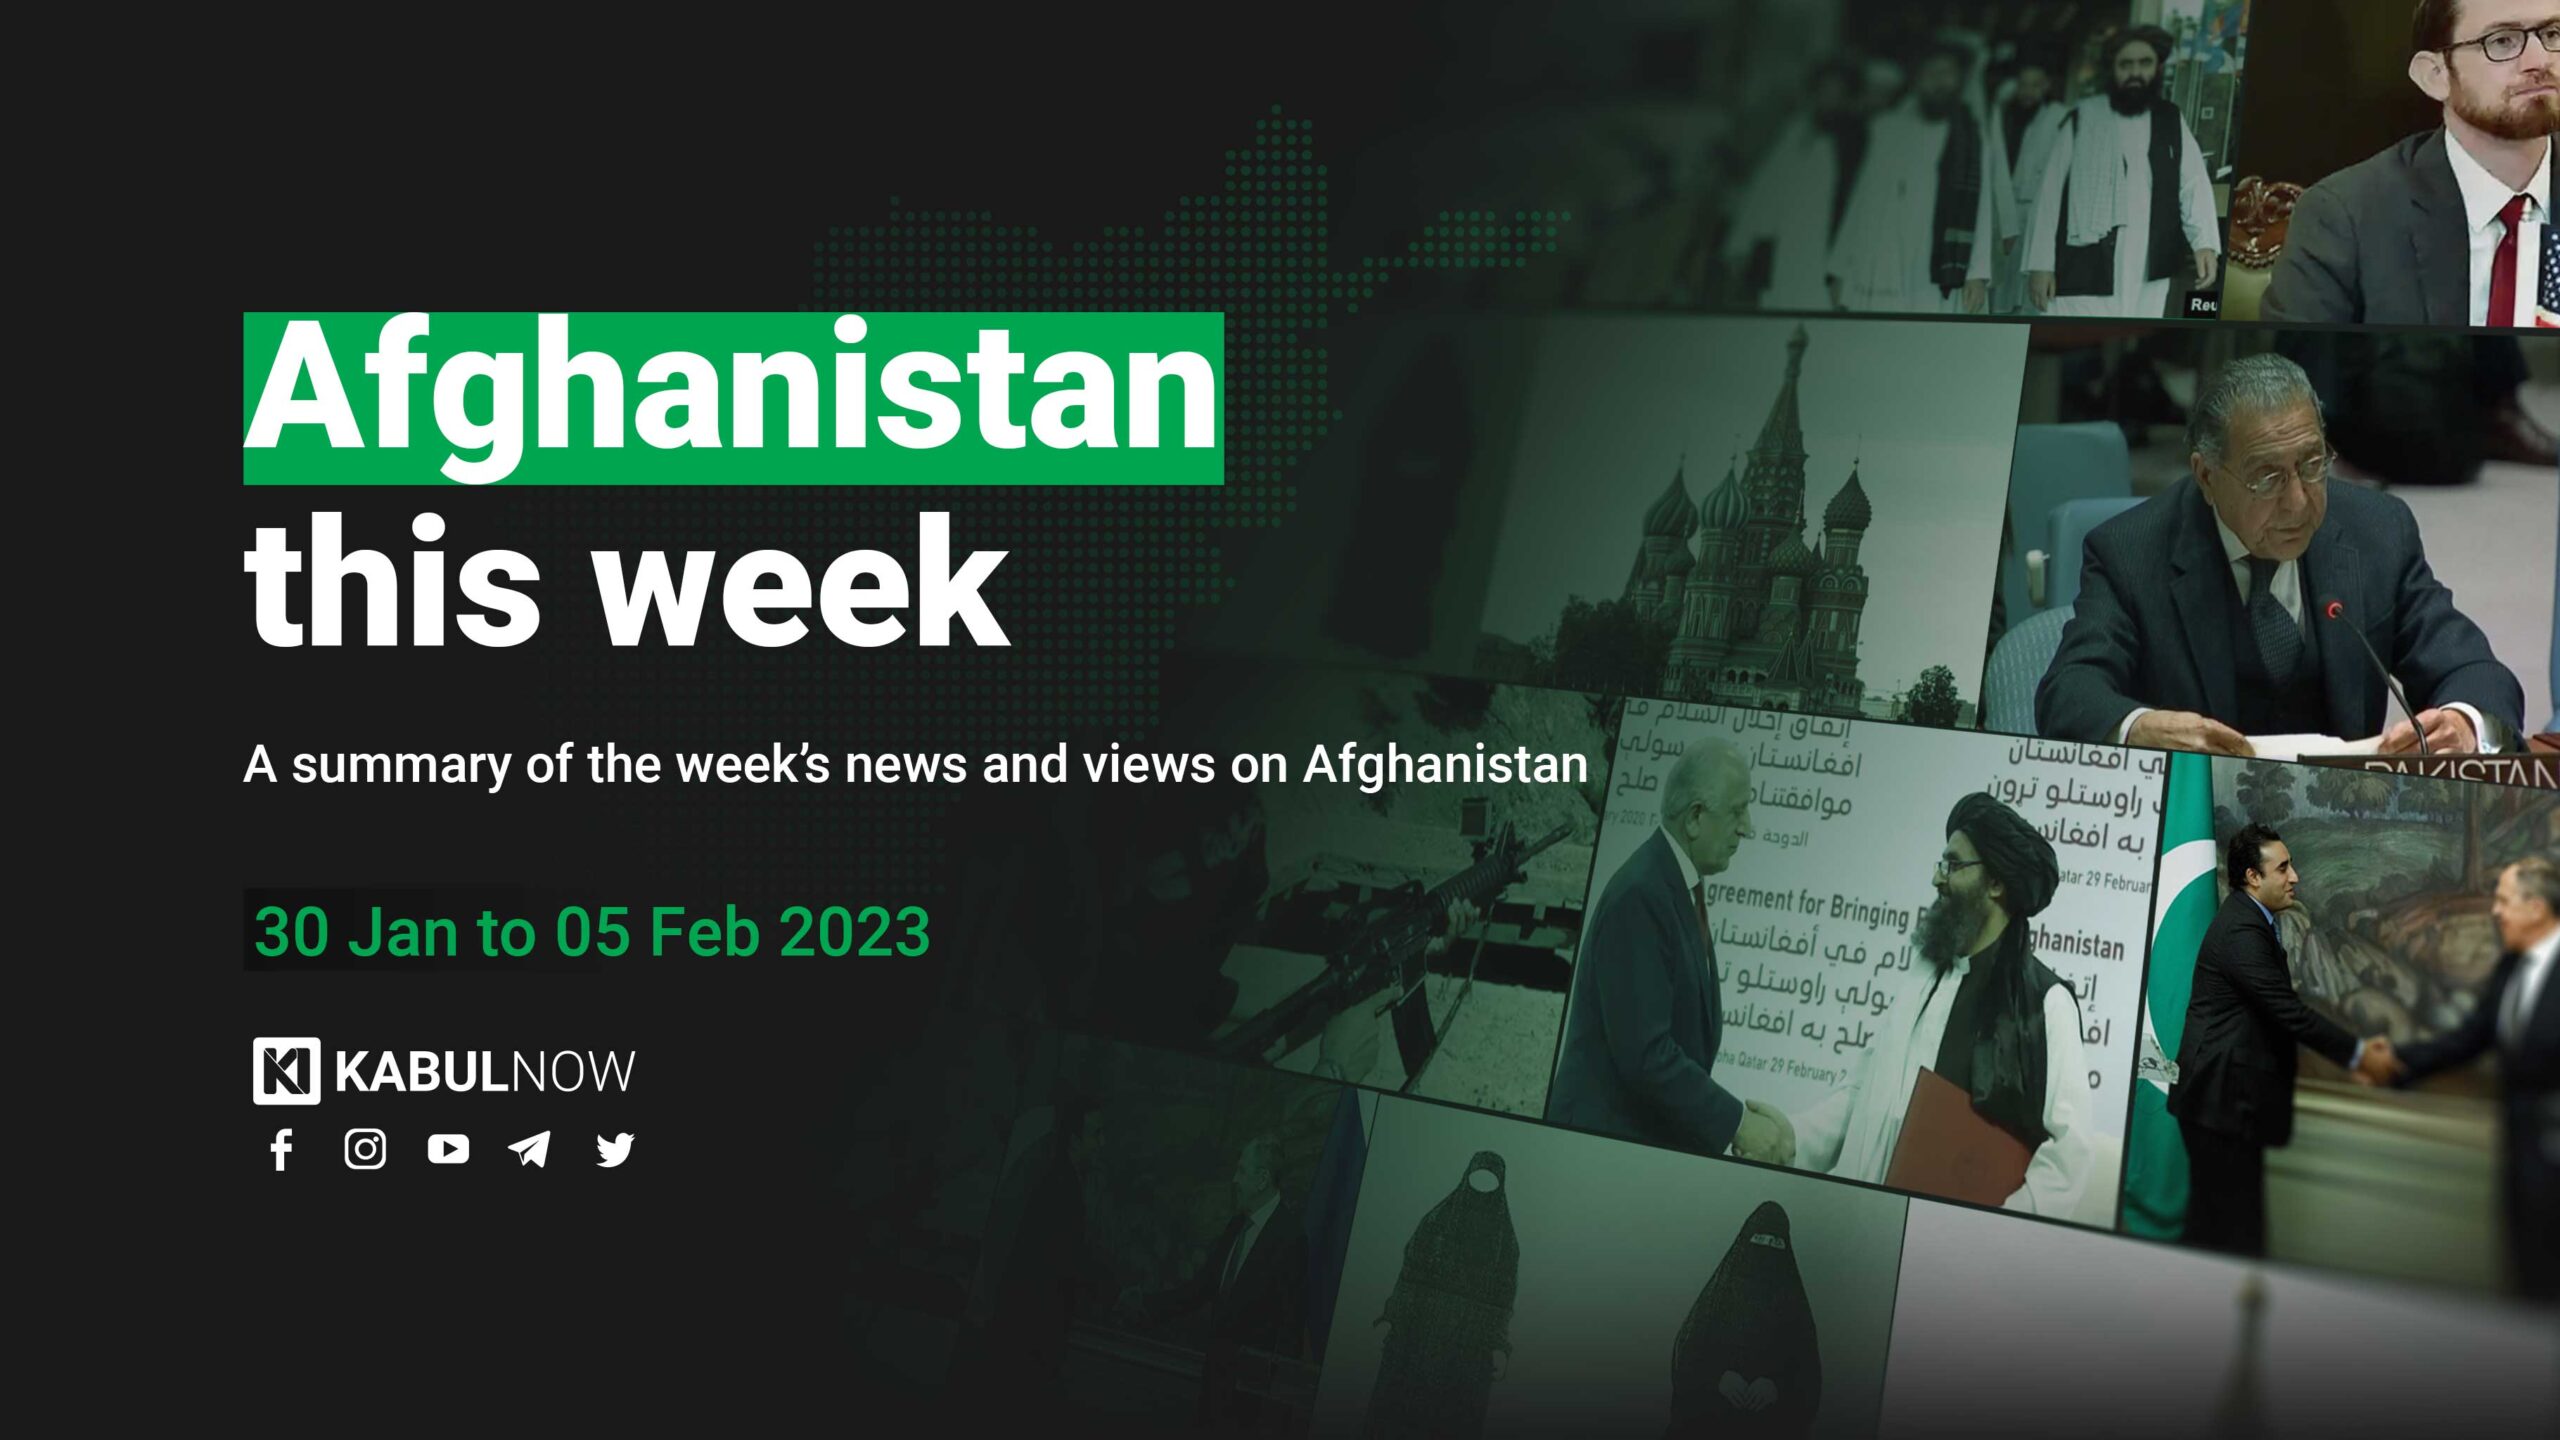 Afghanistan This Week